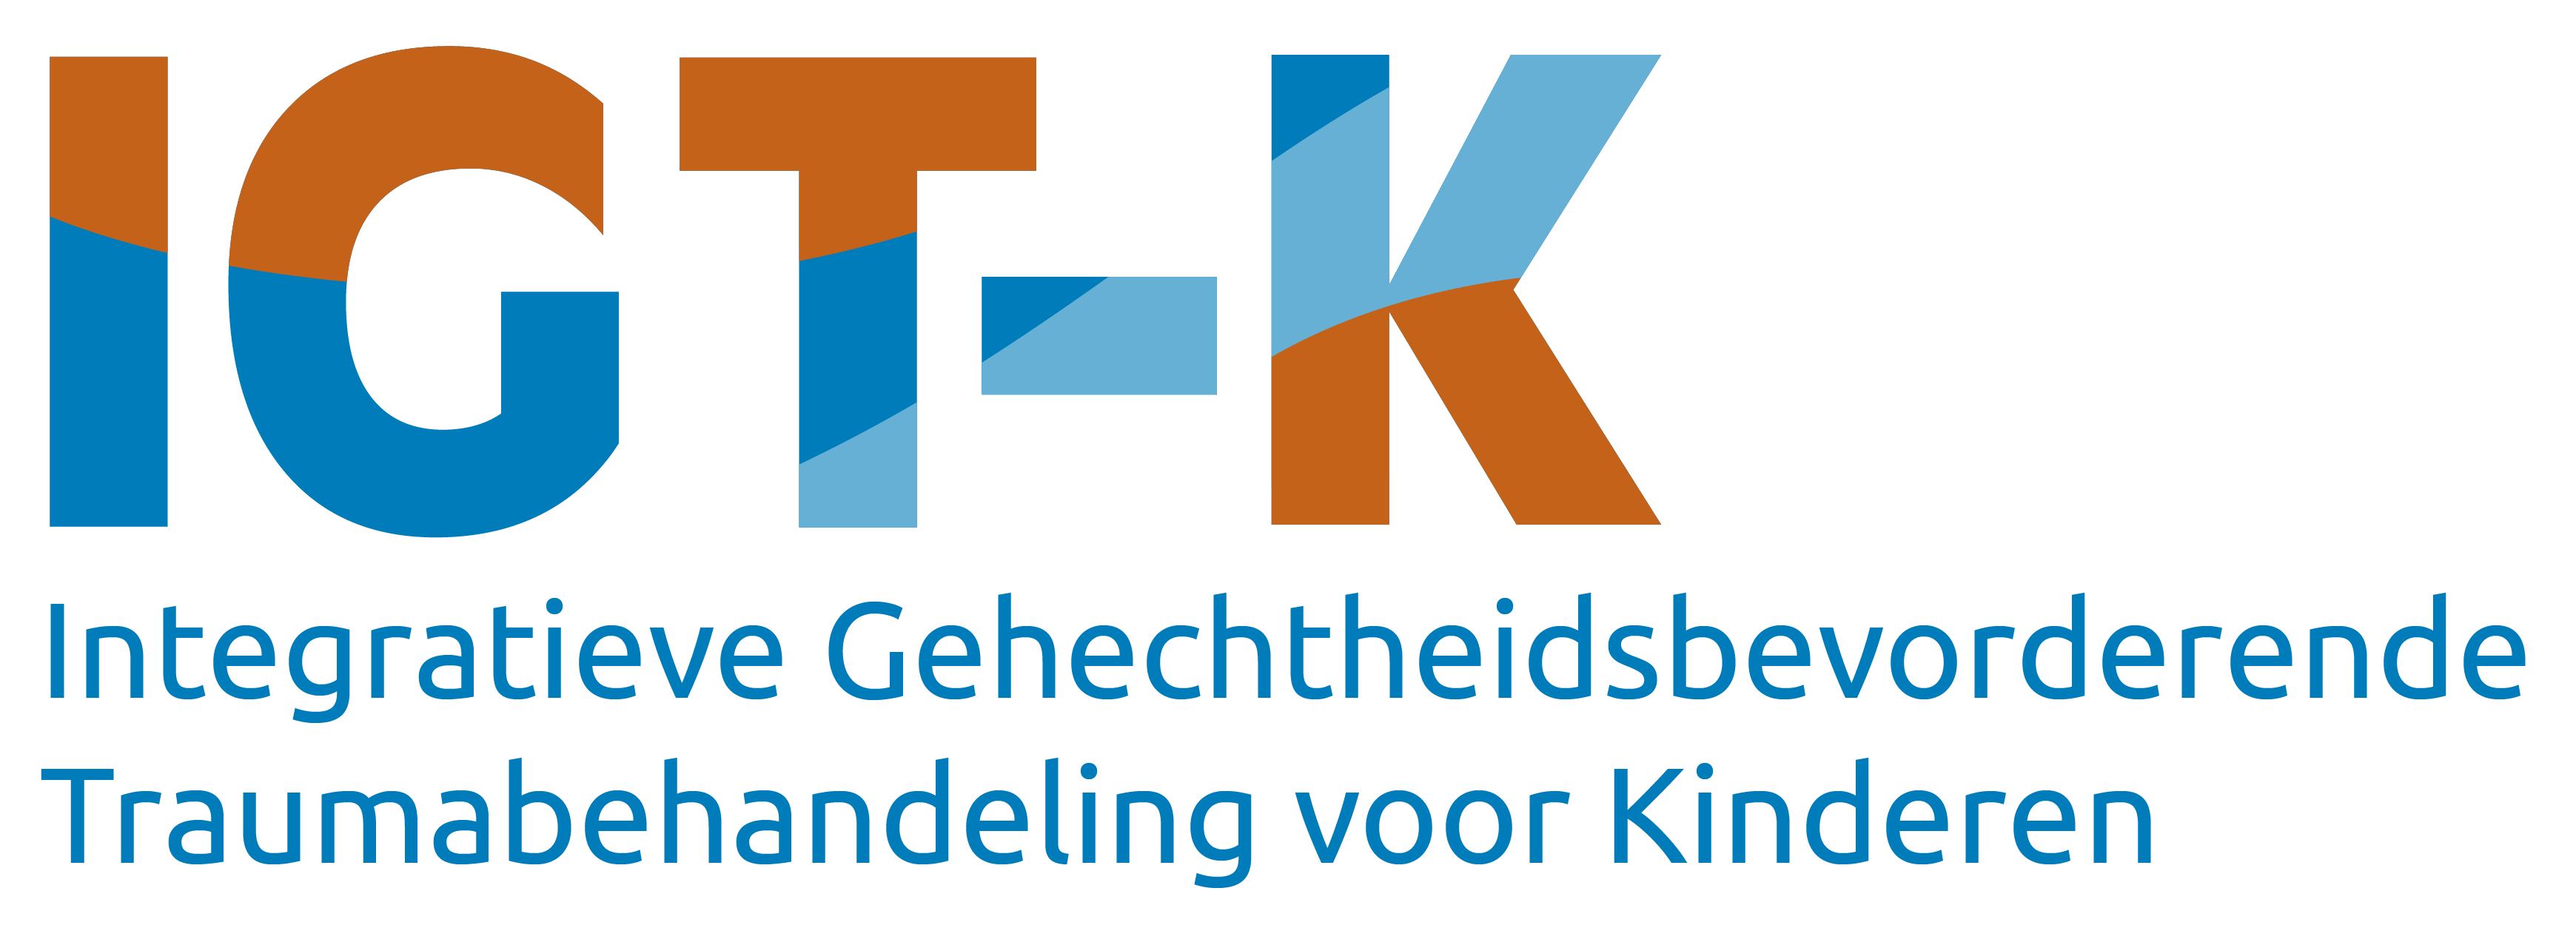 IGT-K Nederland